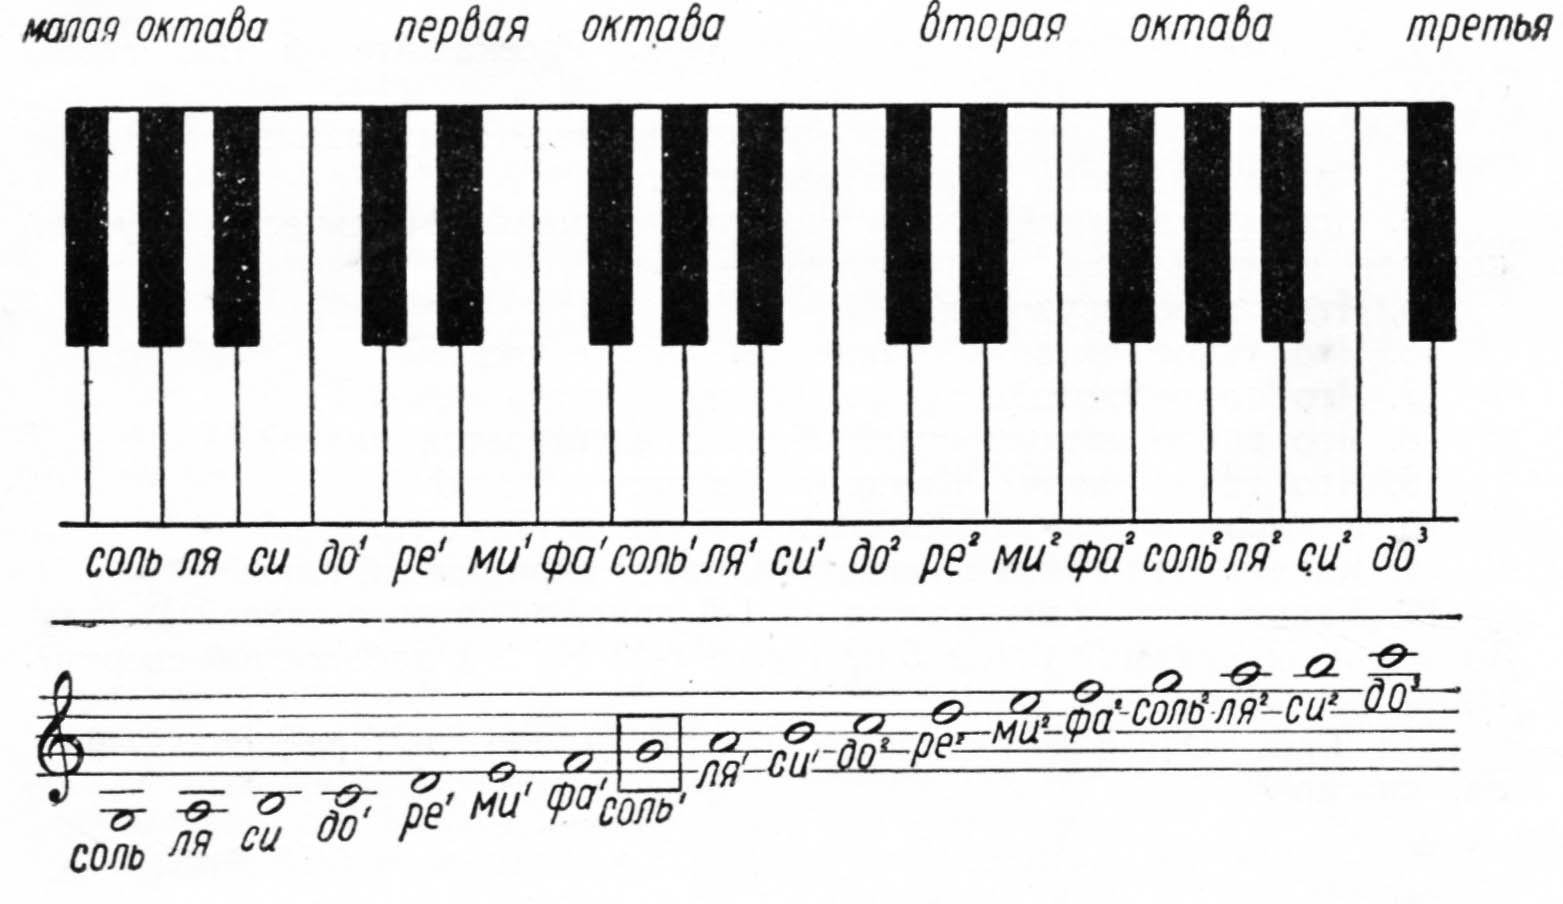 Песни м басовой. Схема синтезатора 1 Октава. Малая Октава первая Октава вторая Октава третья Октава. Нотный стан для синтезатора для начинающих. Октавы фортепиано для сольфеджио.